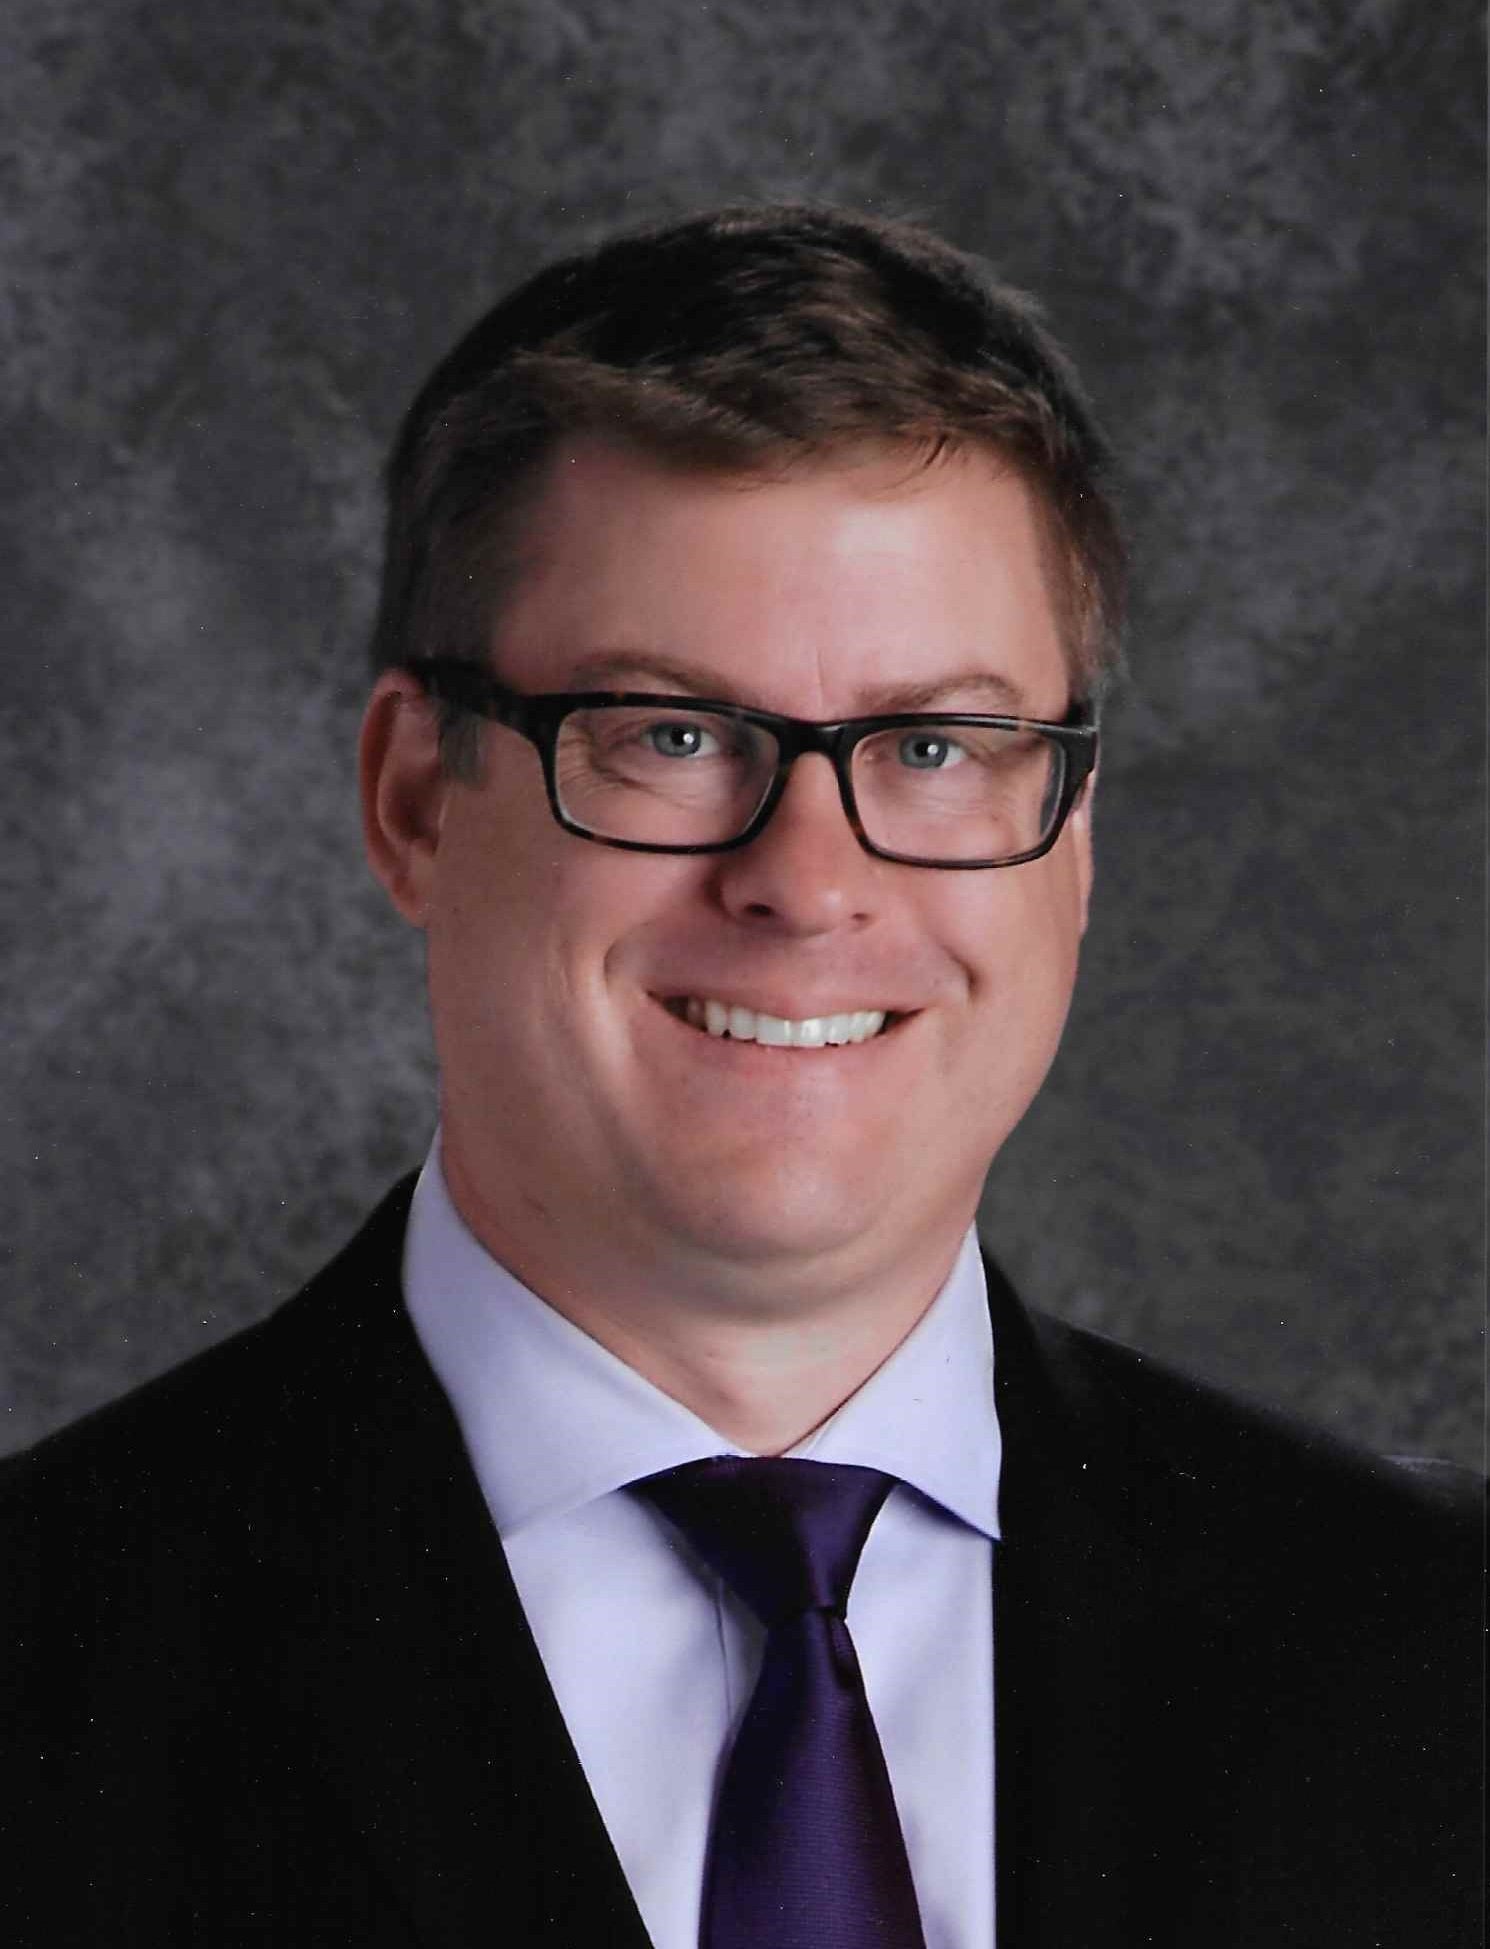 Principal Patrick Gray